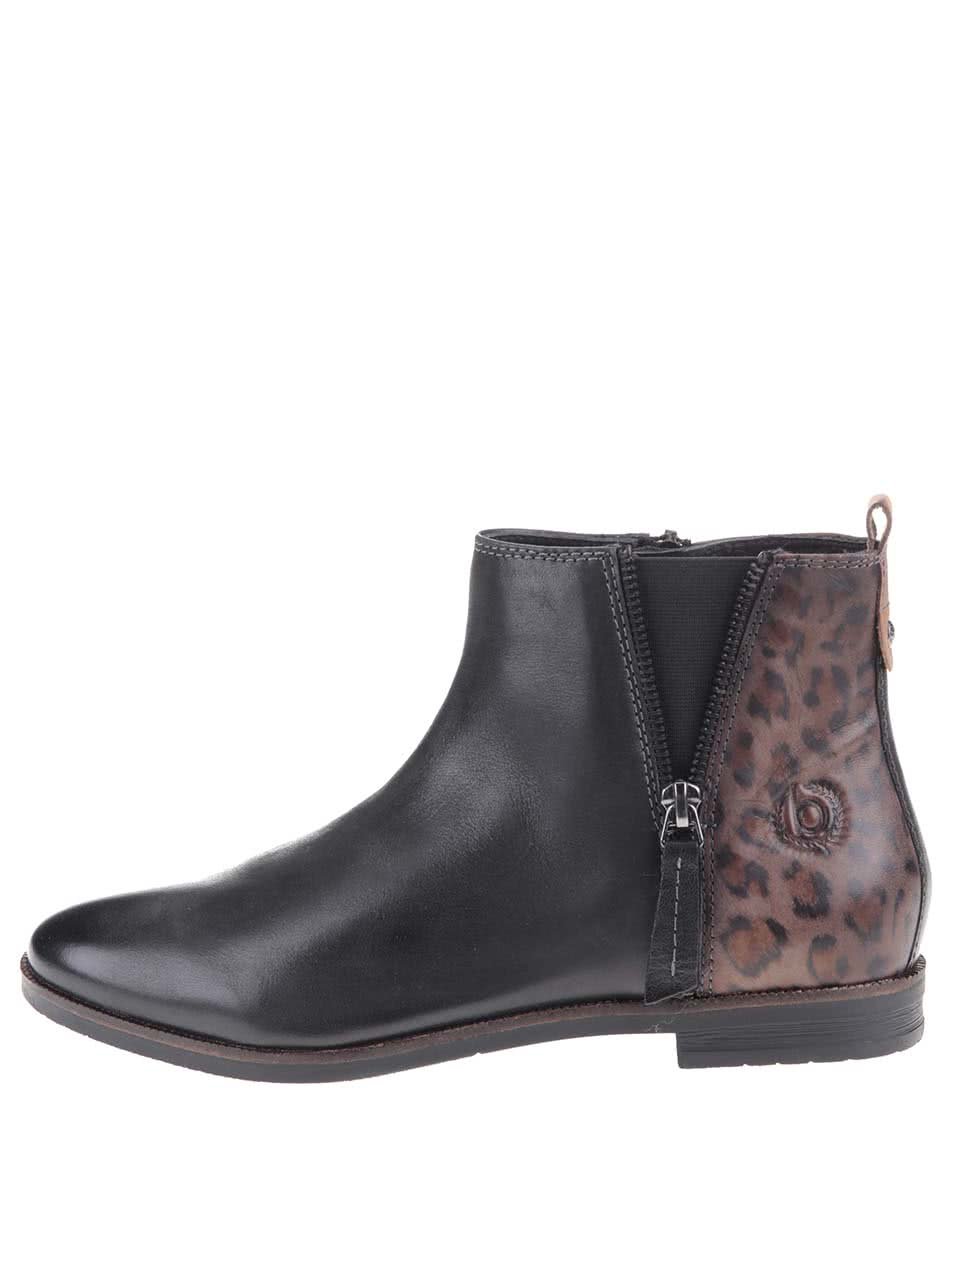 Černé dámské kožené kotníkové boty s leopardím vzorem bugatti Faith